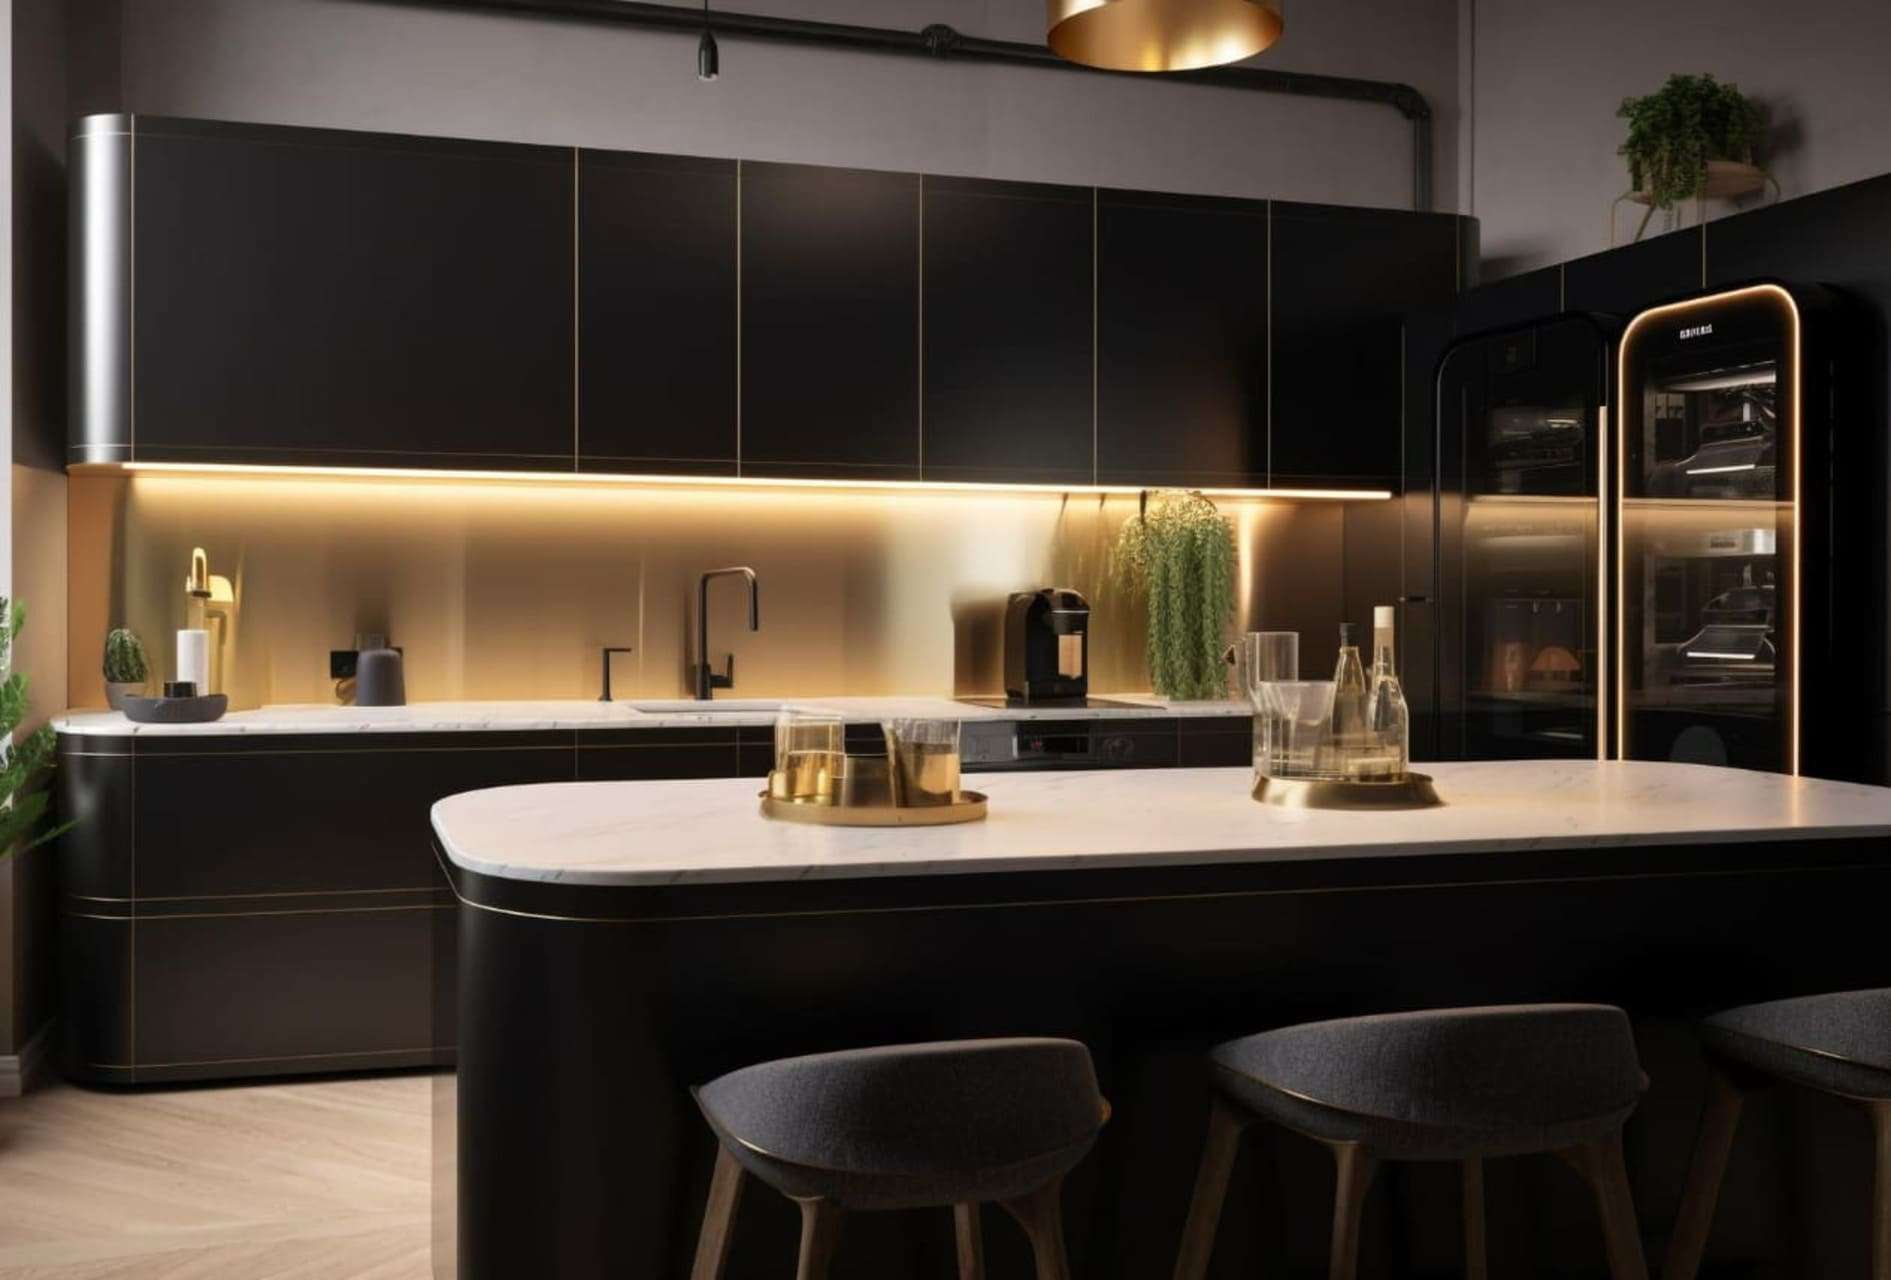 Cozinha preta: dicas, ideias +11 modelos inspiradores p/ compor sua decoração.